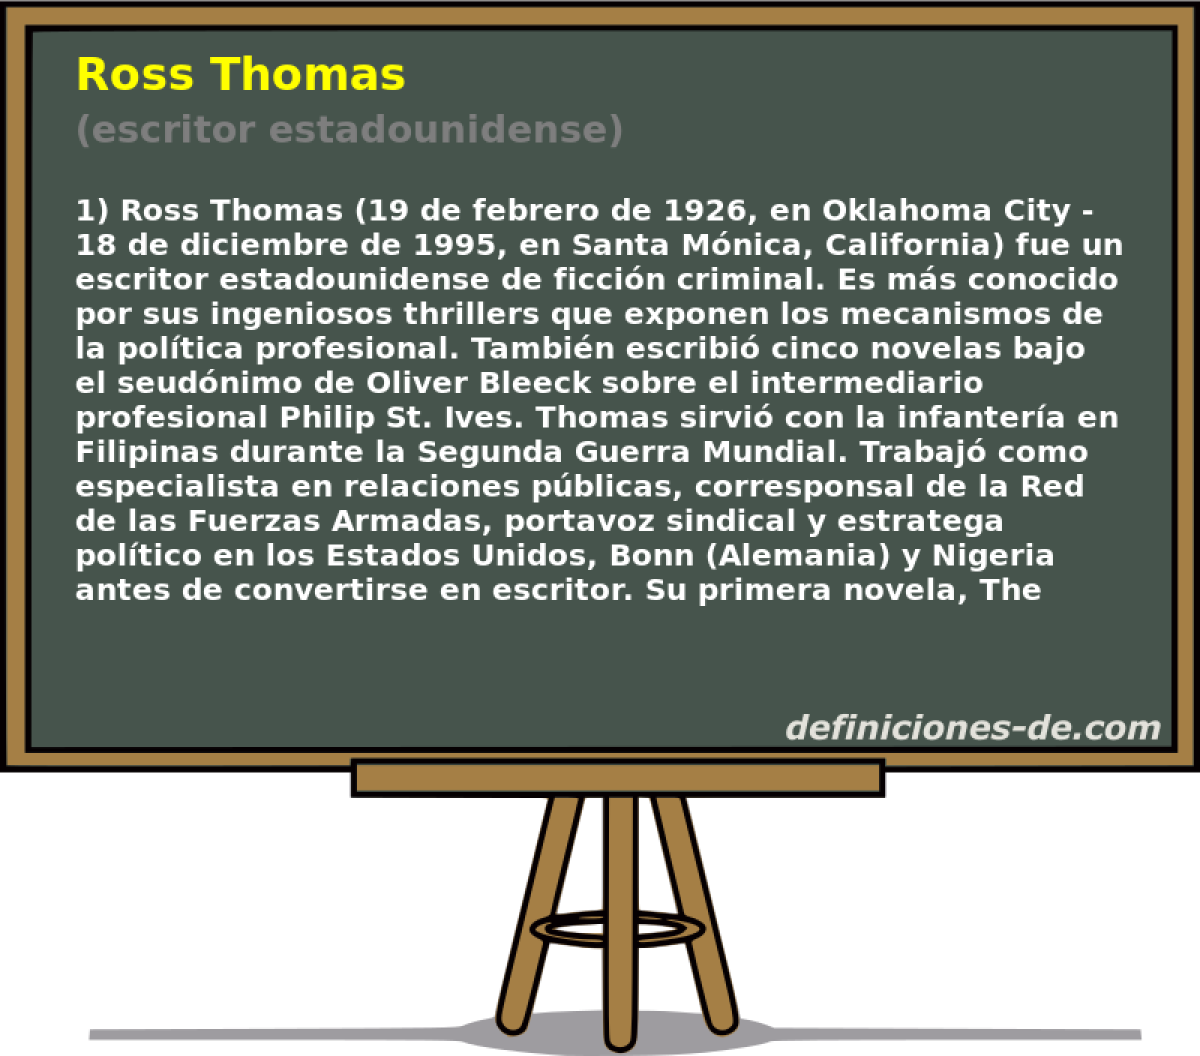 Ross Thomas (escritor estadounidense)